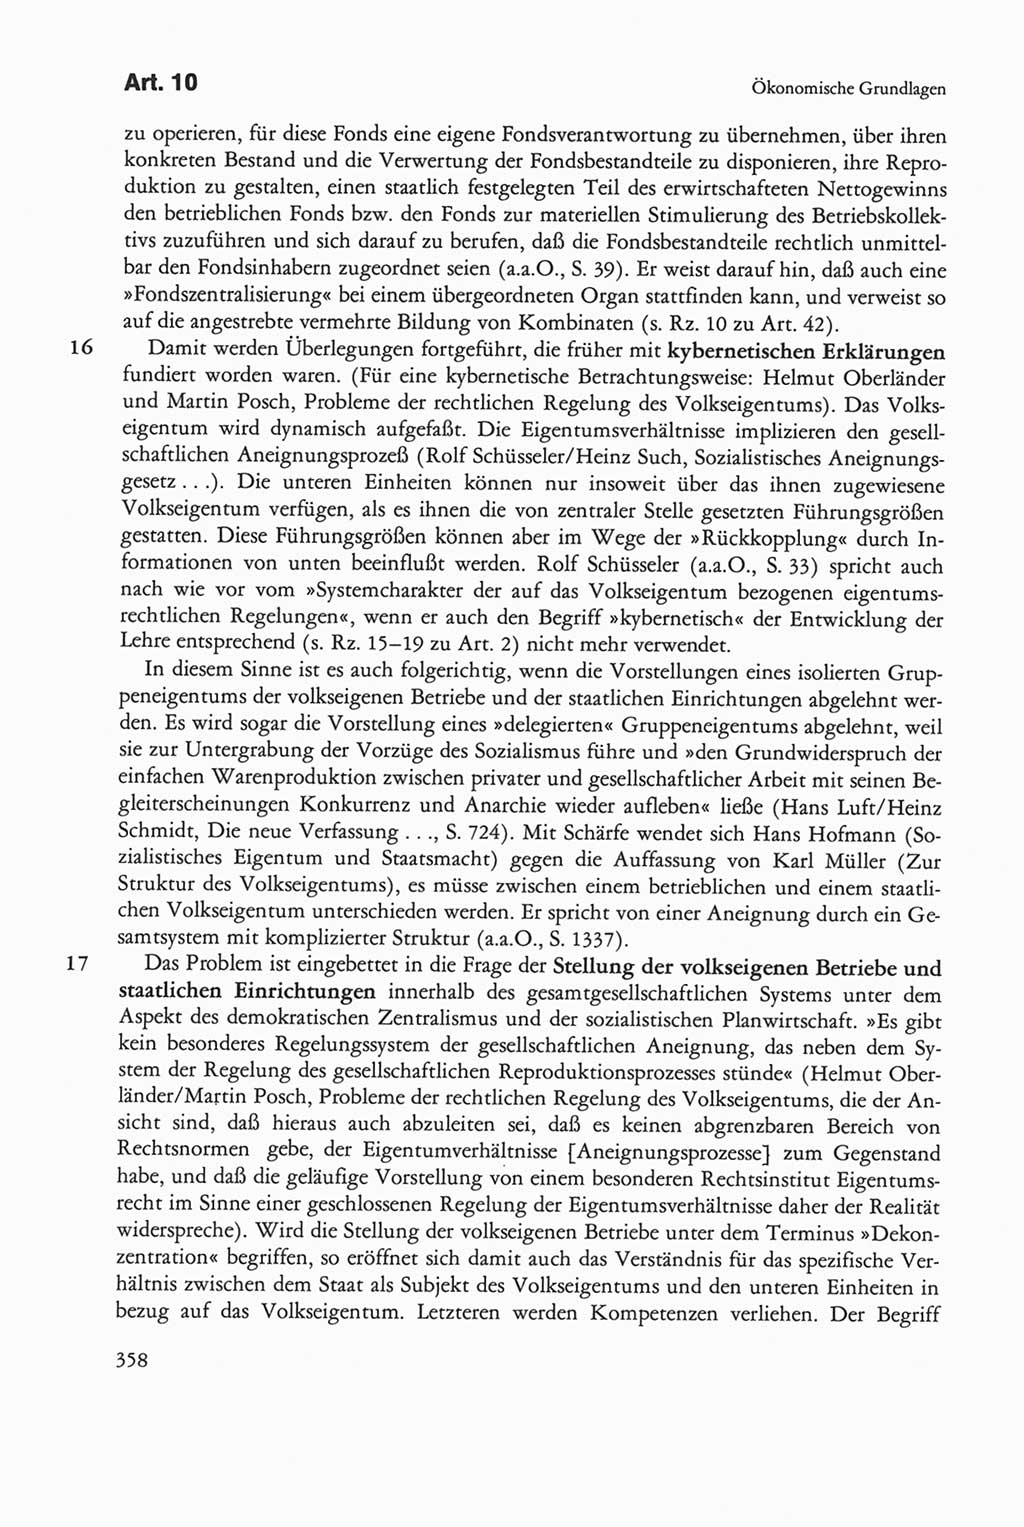 Die sozialistische Verfassung der Deutschen Demokratischen Republik (DDR), Kommentar mit einem Nachtrag 1997, Seite 358 (Soz. Verf. DDR Komm. Nachtr. 1997, S. 358)